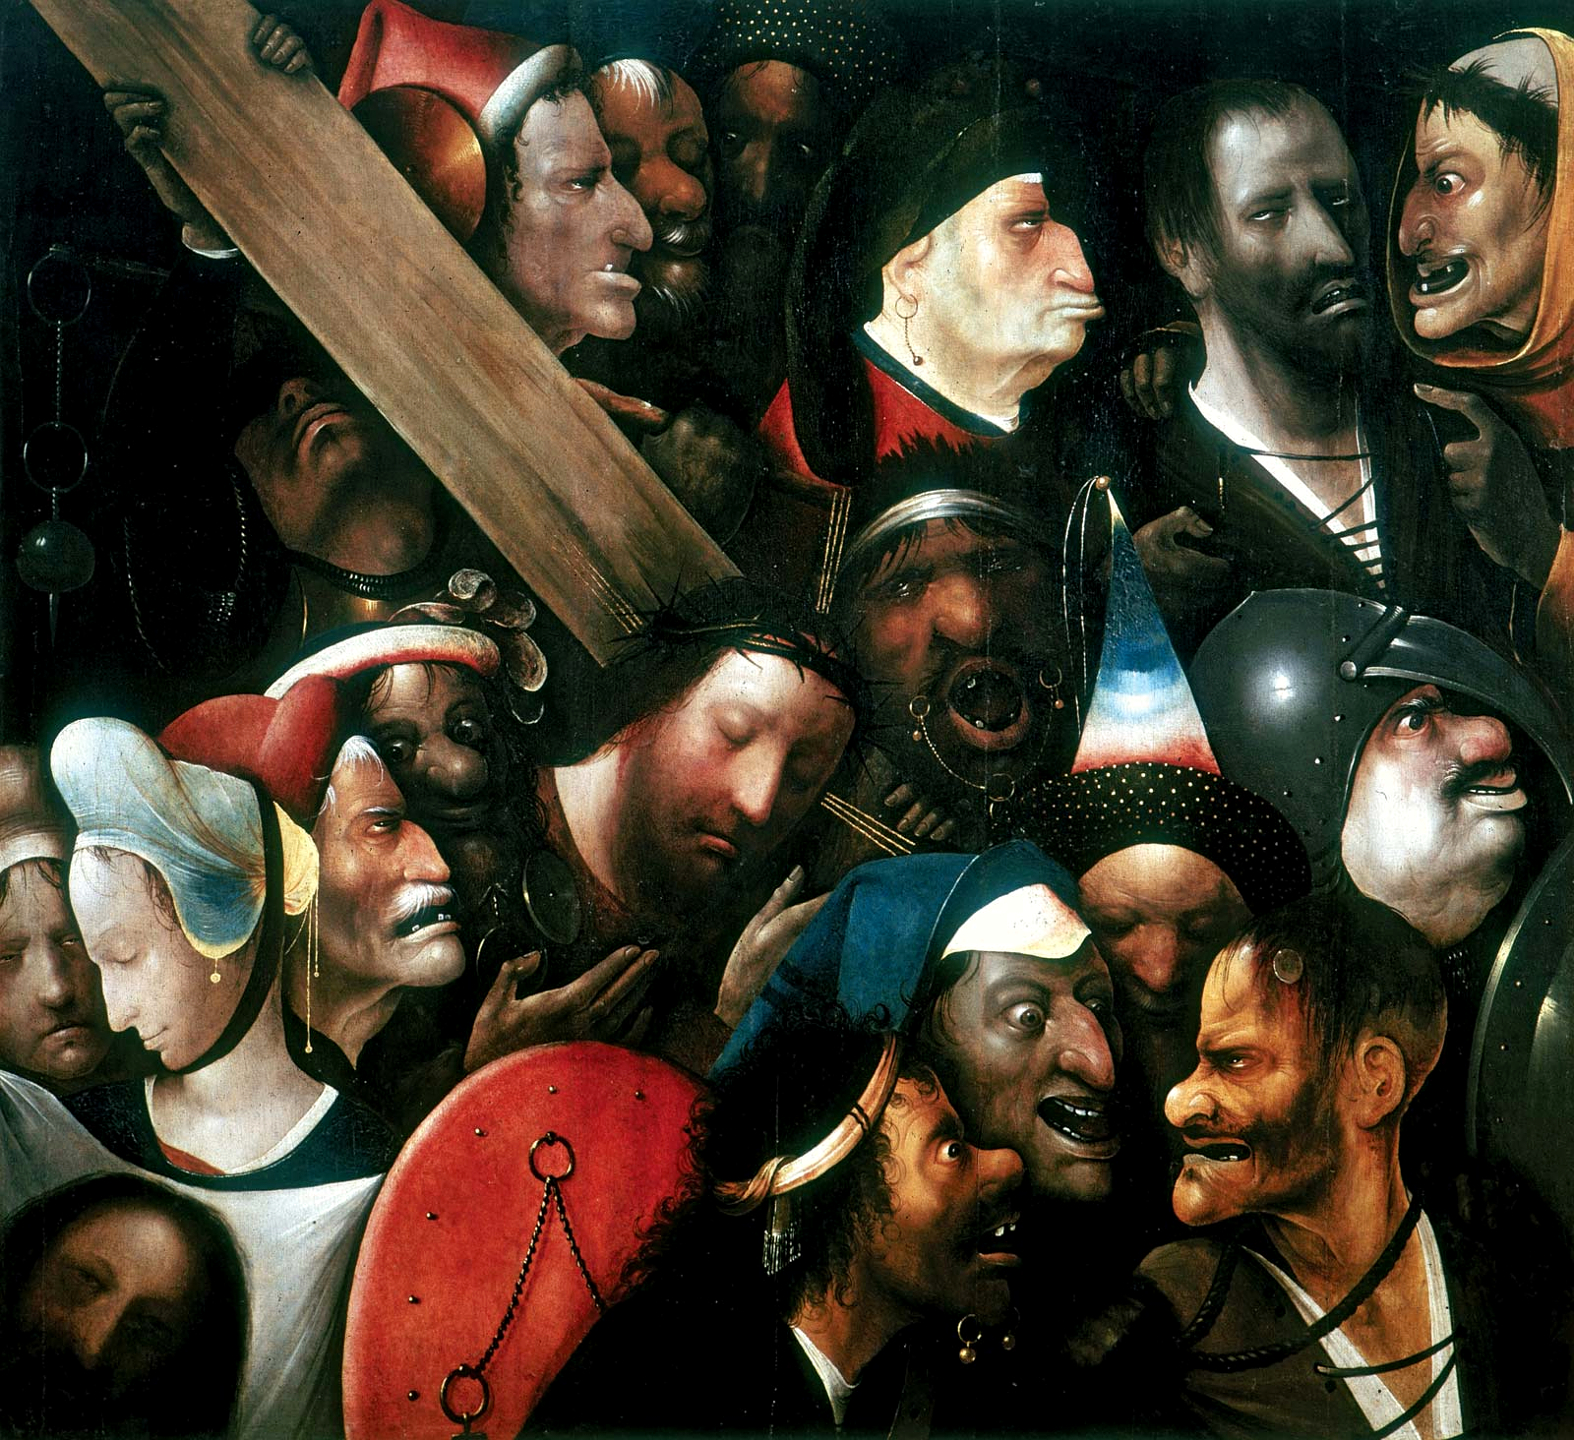 Kristus nesoucí kříž by Hieronymus Bosch's follower - cca. 1510 